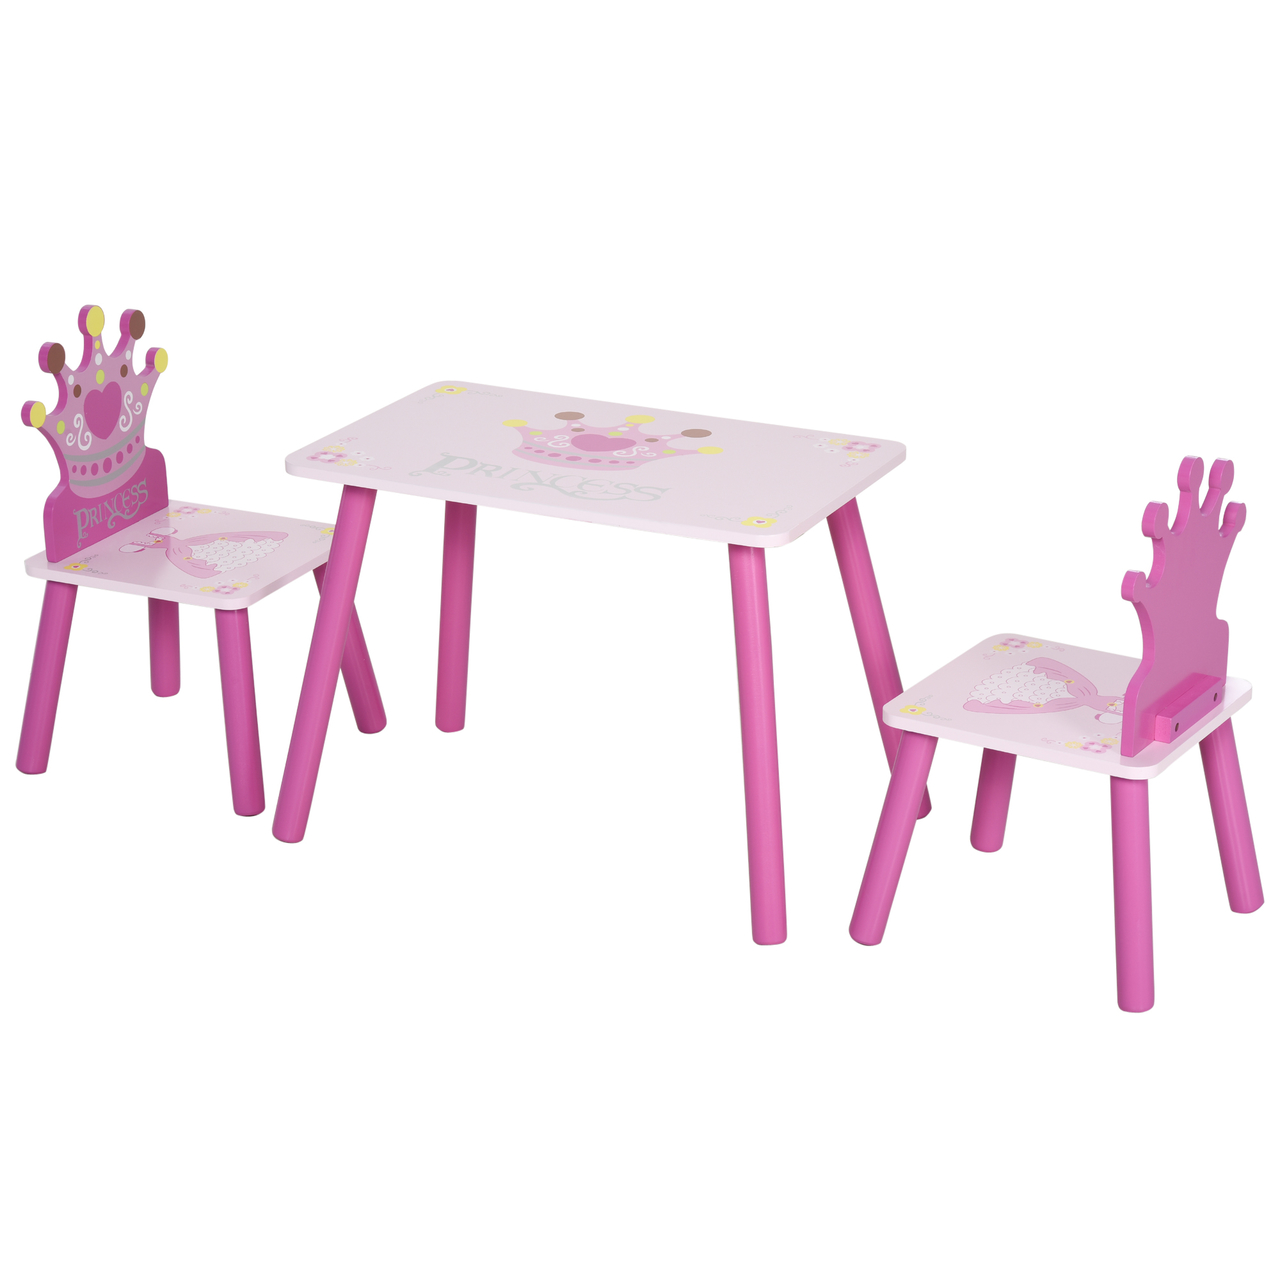 Laboratorium klein informatie Kinderzitgroep 3 - delig - Kinderstoel - Kindertafel - Kinderspeelgoed -  Speelgoed 2 jaar - Roze - NiceGoodz